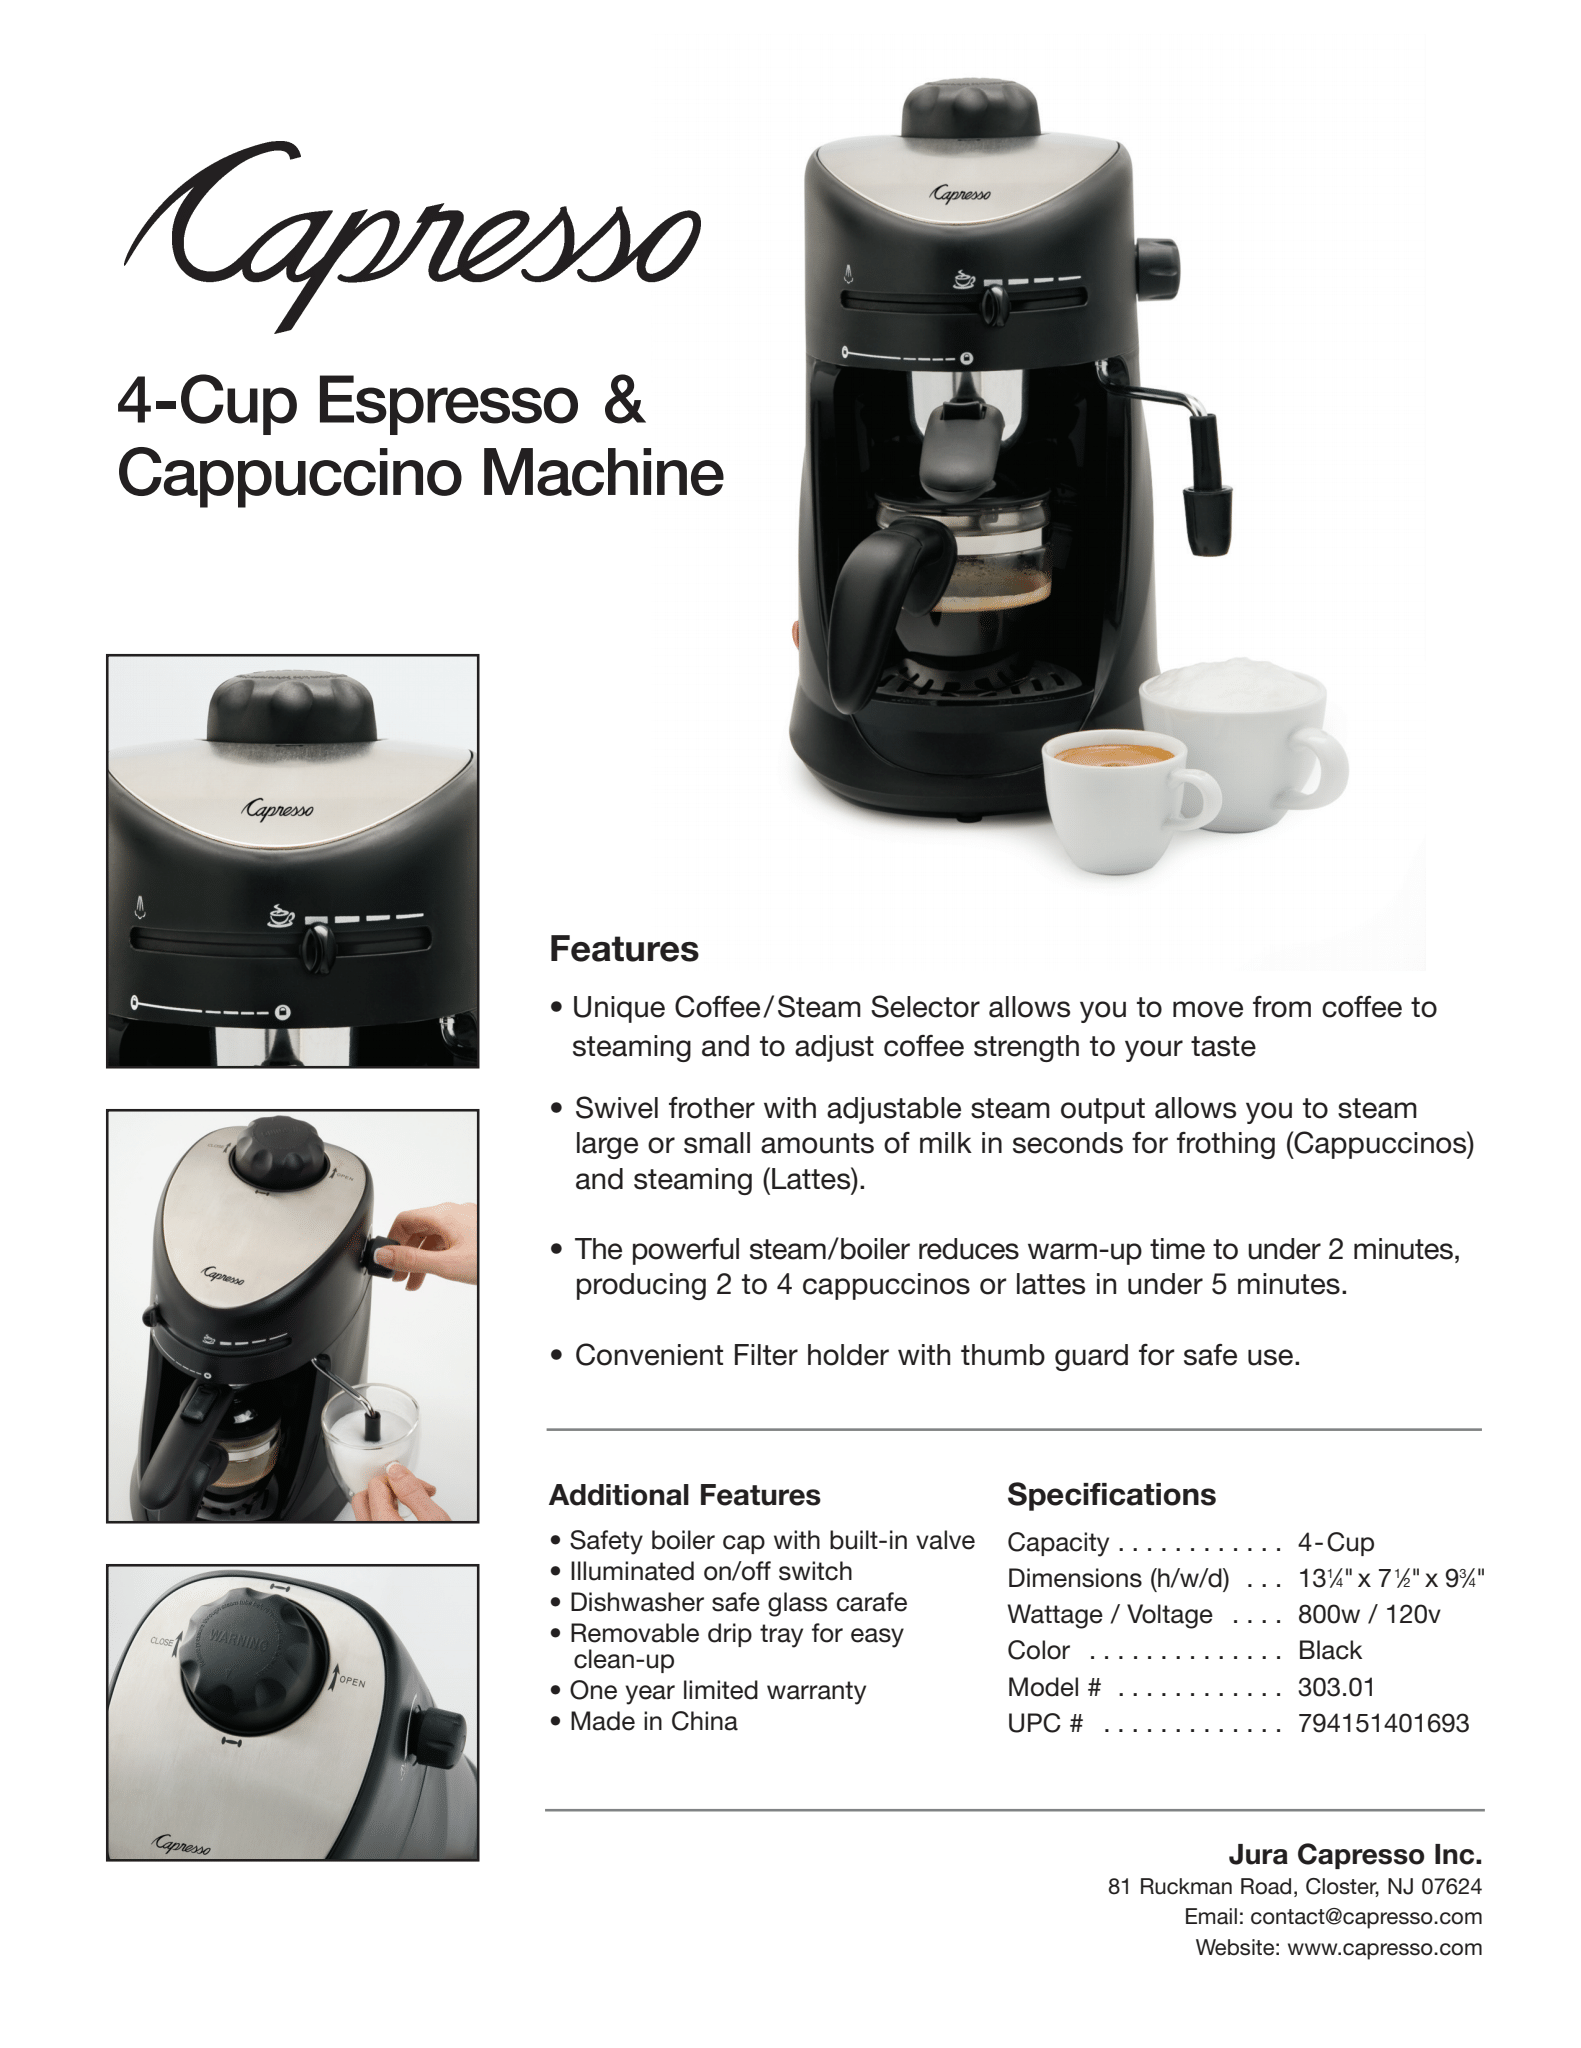 Capresso 4CUPESPRESSO-RB 303.01 4-Cup Espresso and Cappuccino Machine-Certified Refurbished